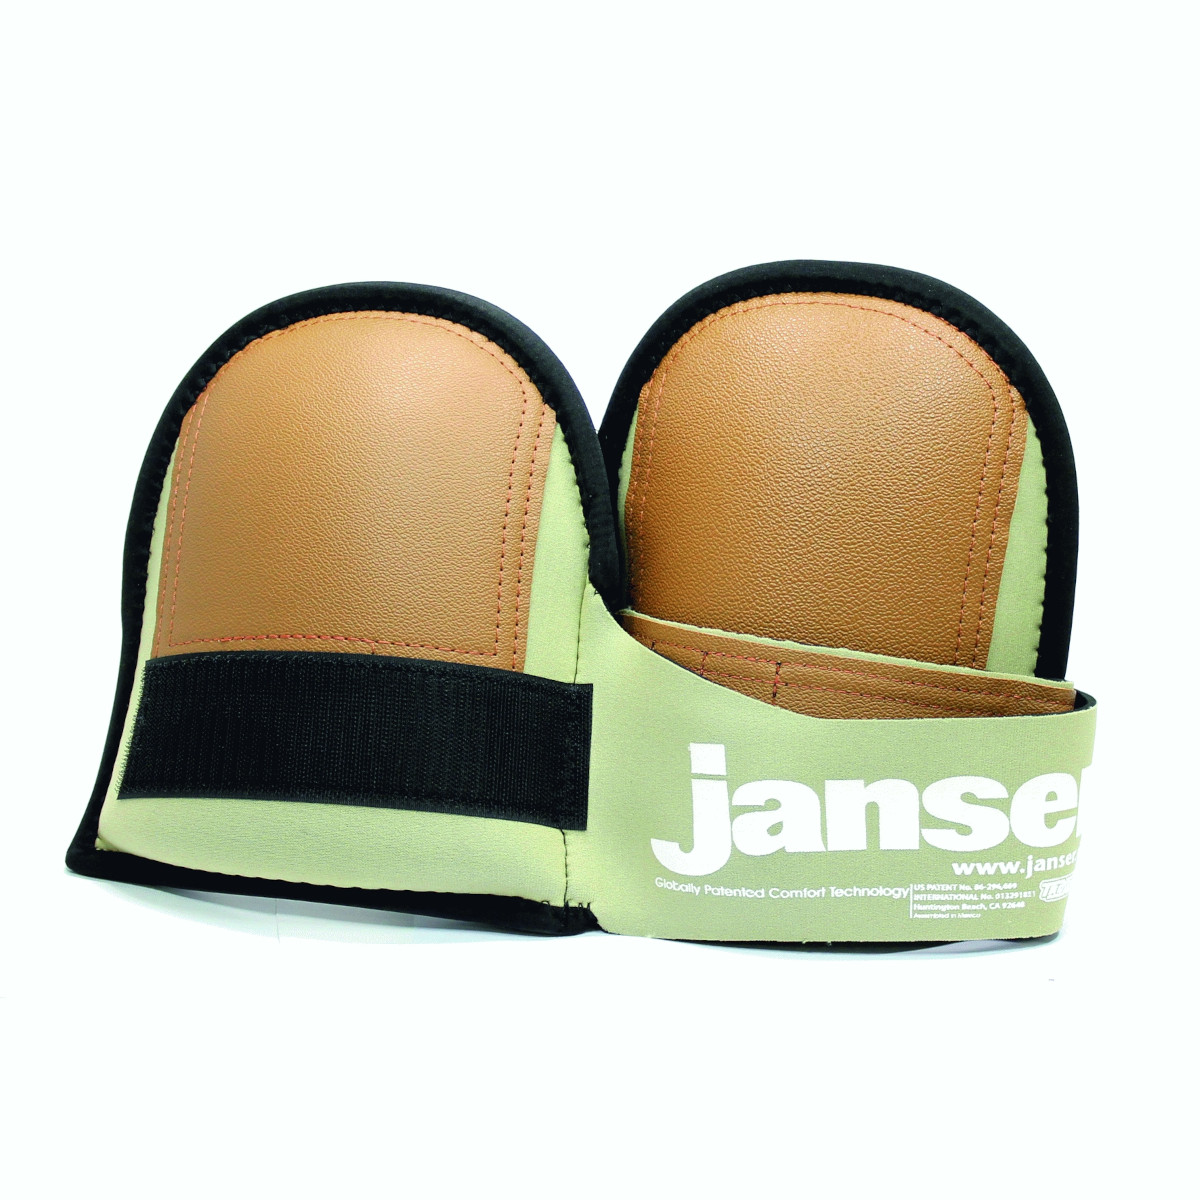 Janser Knieschoner Super Soft - Leder Ausführung